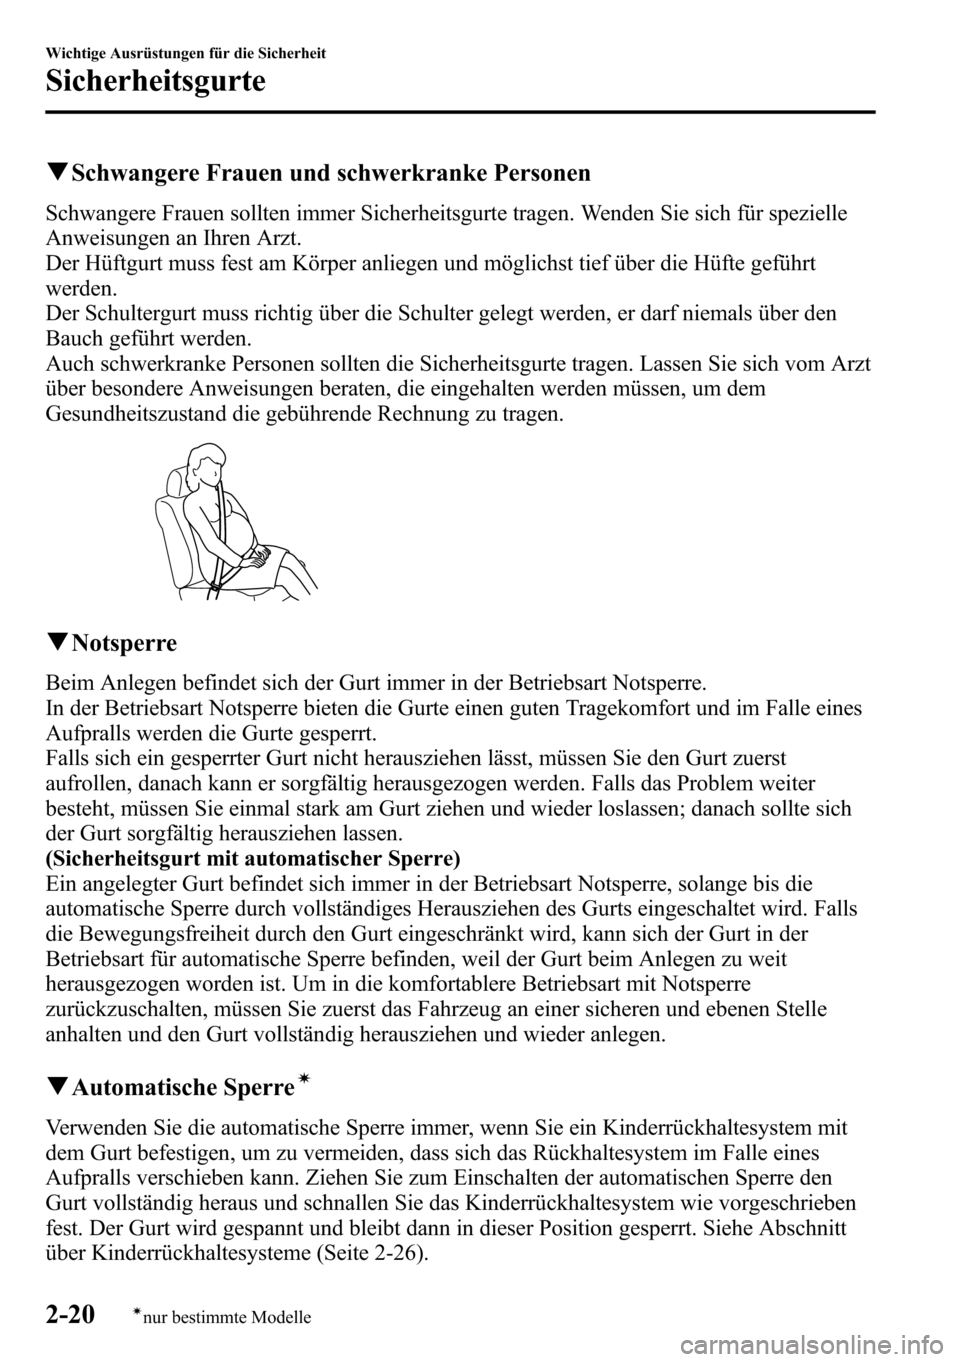 MAZDA MODEL CX-5 2013  Betriebsanleitung (in German) qSchwangere Frauen und schwerkranke Personen
Schwangere Frauen sollten immer Sicherheitsgurte tragen. Wenden Sie sich für spezielle
Anweisungen an Ihren Arzt.
Der Hüftgurt muss fest am Körper anlie